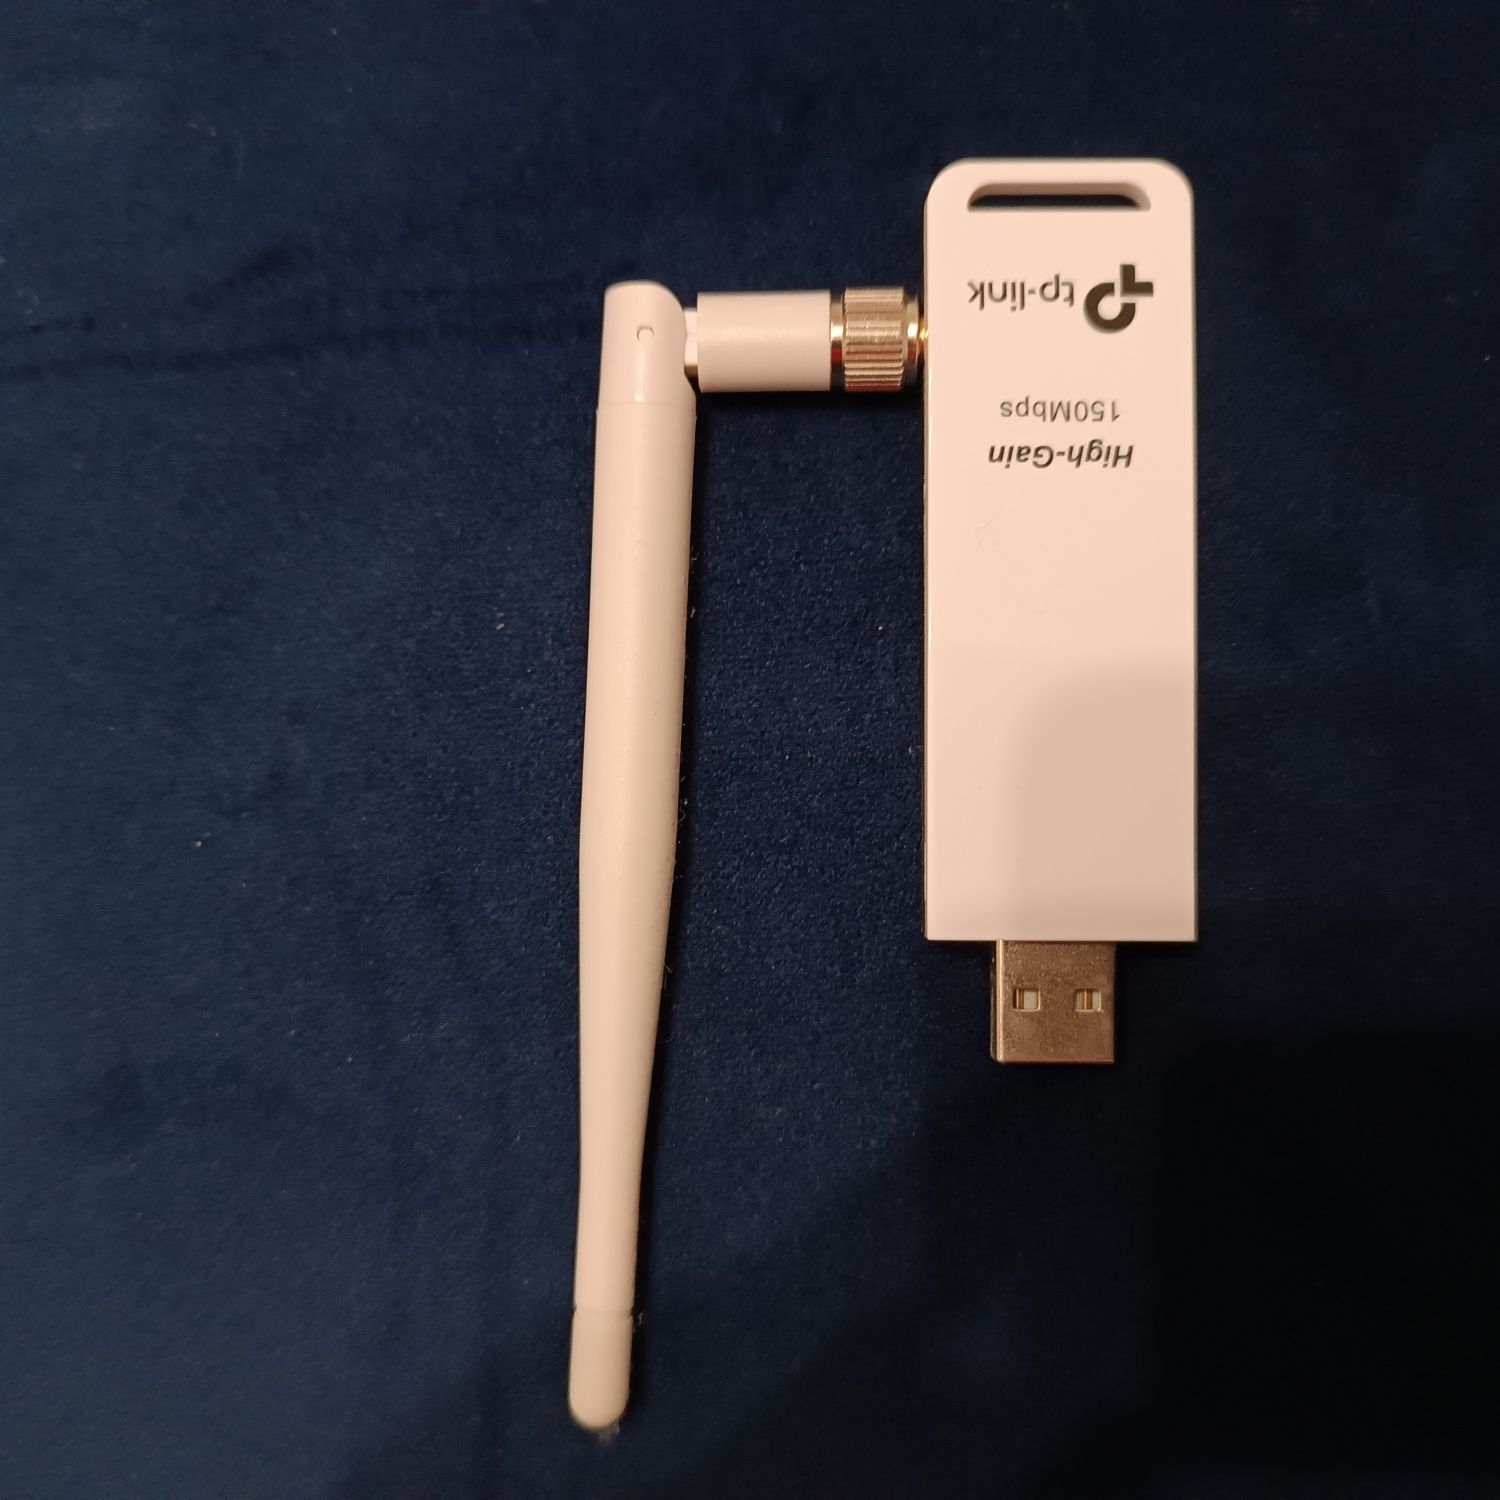 TL-WN722N Bezprzewodowa karta sieciowa USB dużego zasięgu, 150 Mb/s